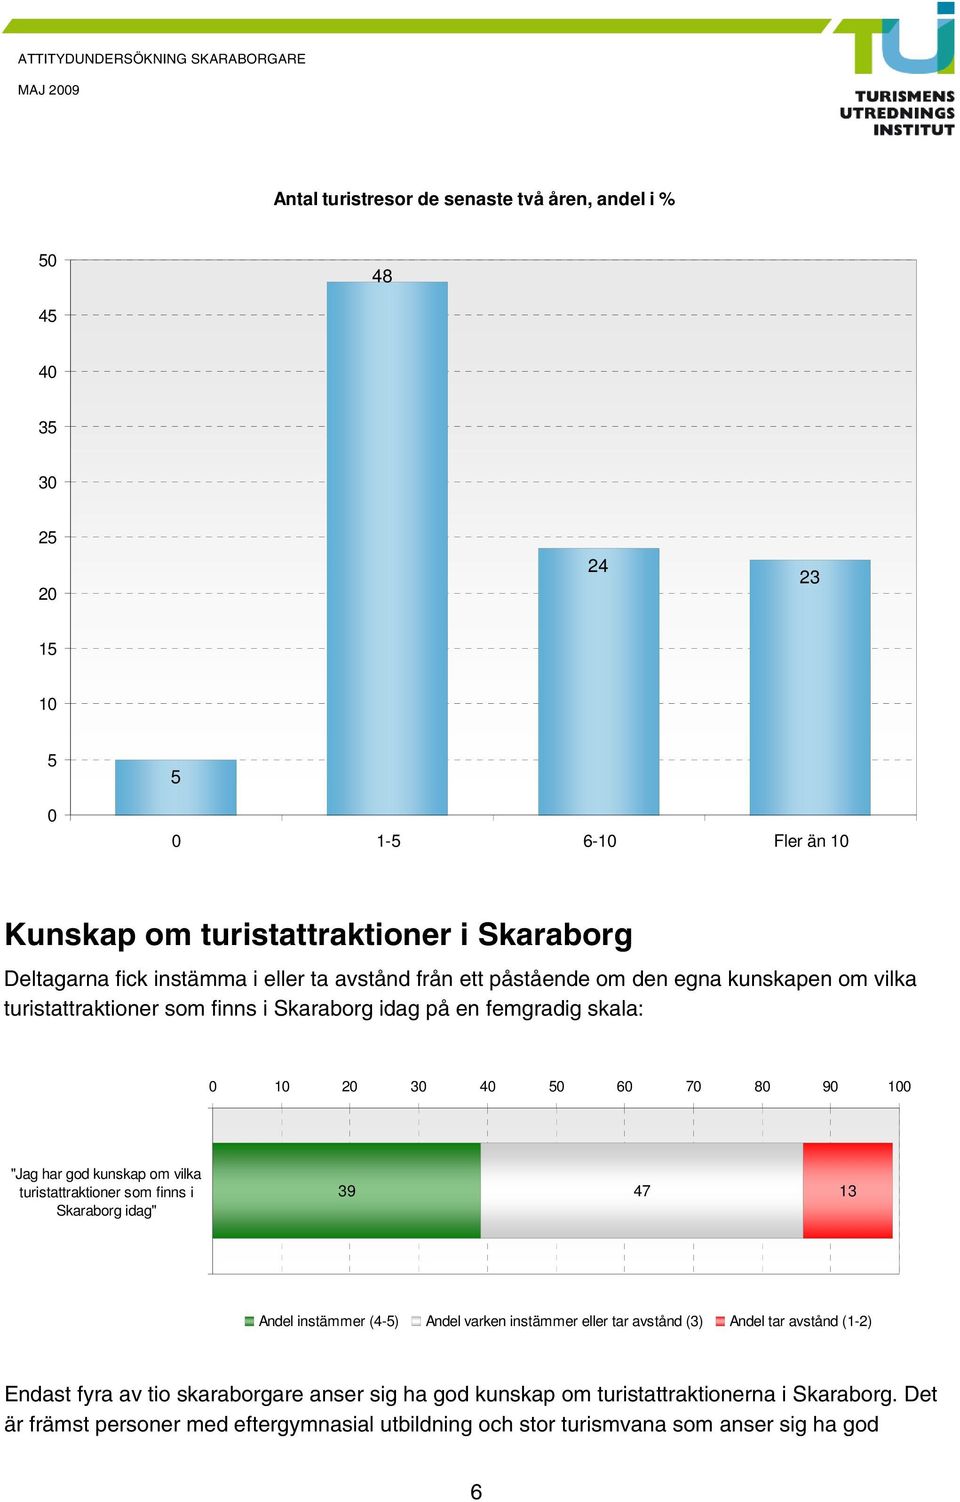 kunskap om vilka turistattraktioner som finns i Skaraborg idag" 39 7 13 Andel instämmer (-) Andel varken instämmer eller tar avstånd (3) Andel tar avstånd (1-) Endast fyra